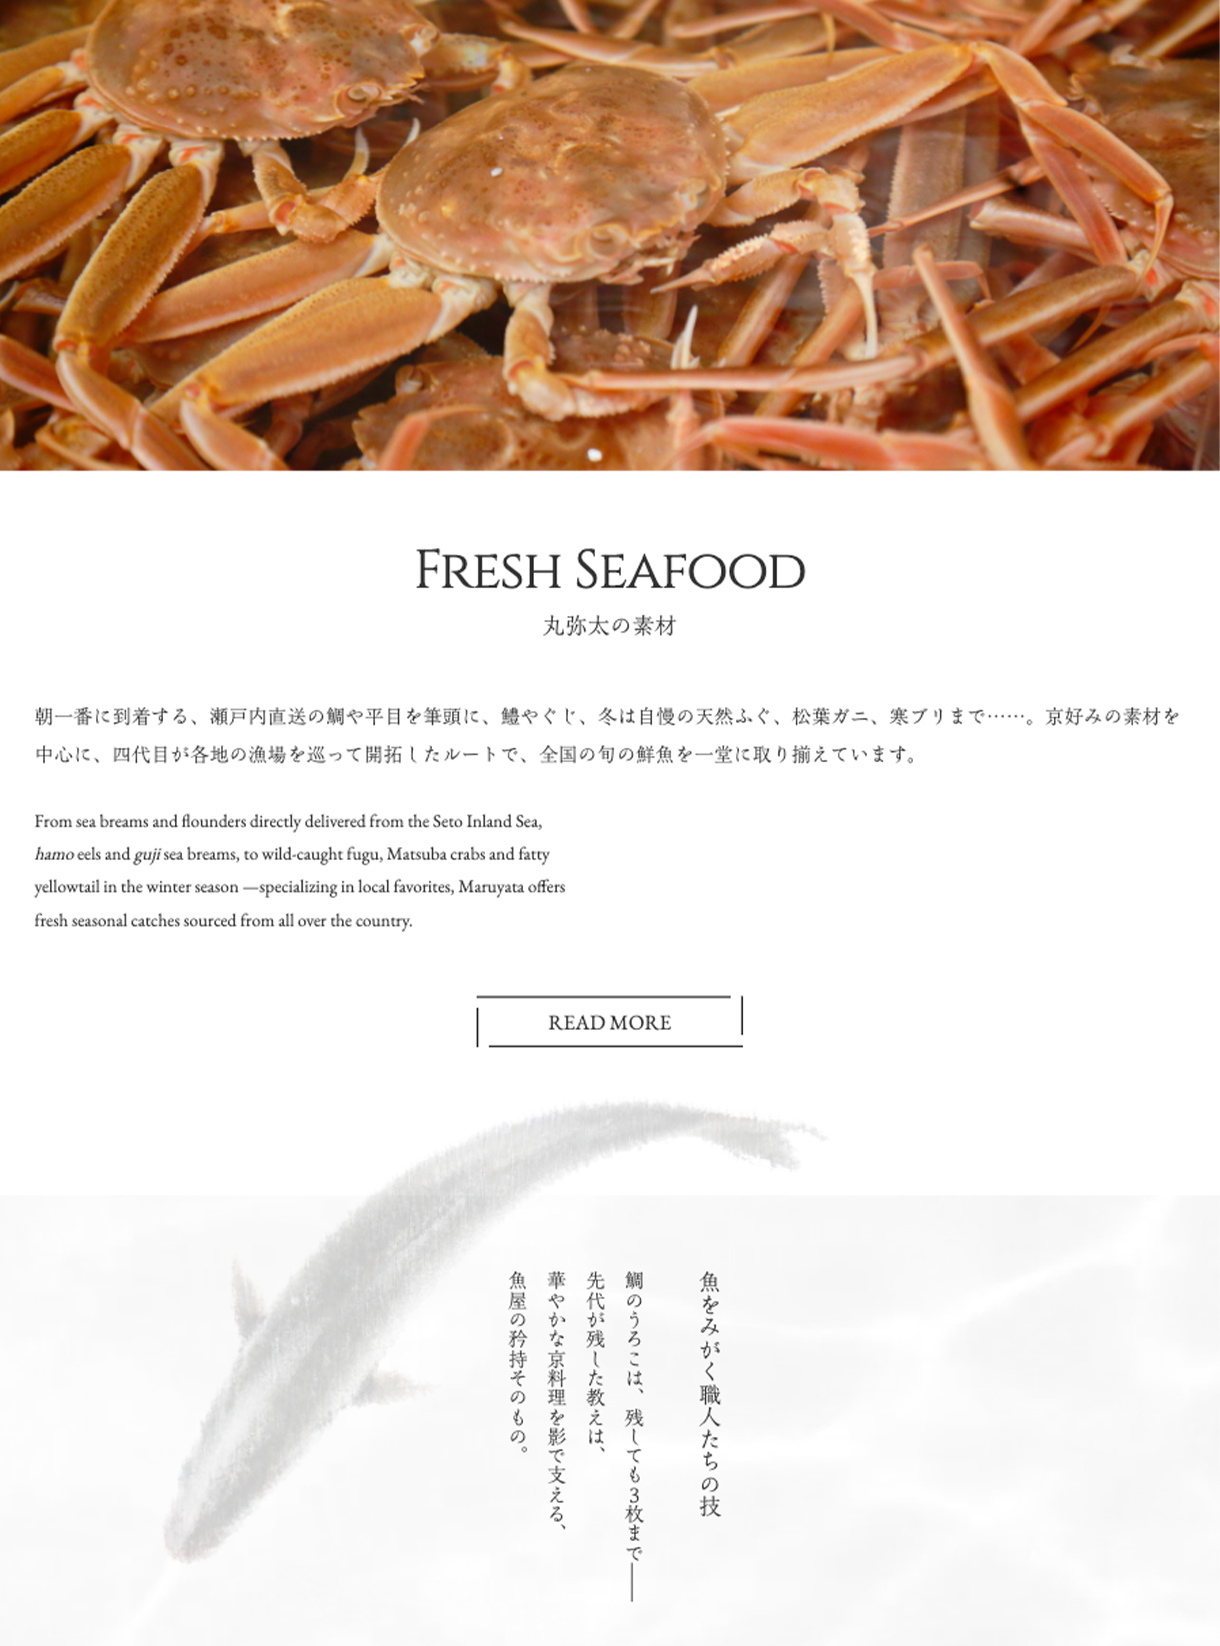 京都錦市場の鮮魚店 丸弥太 webサイトの丸弥太の素材ページの画像